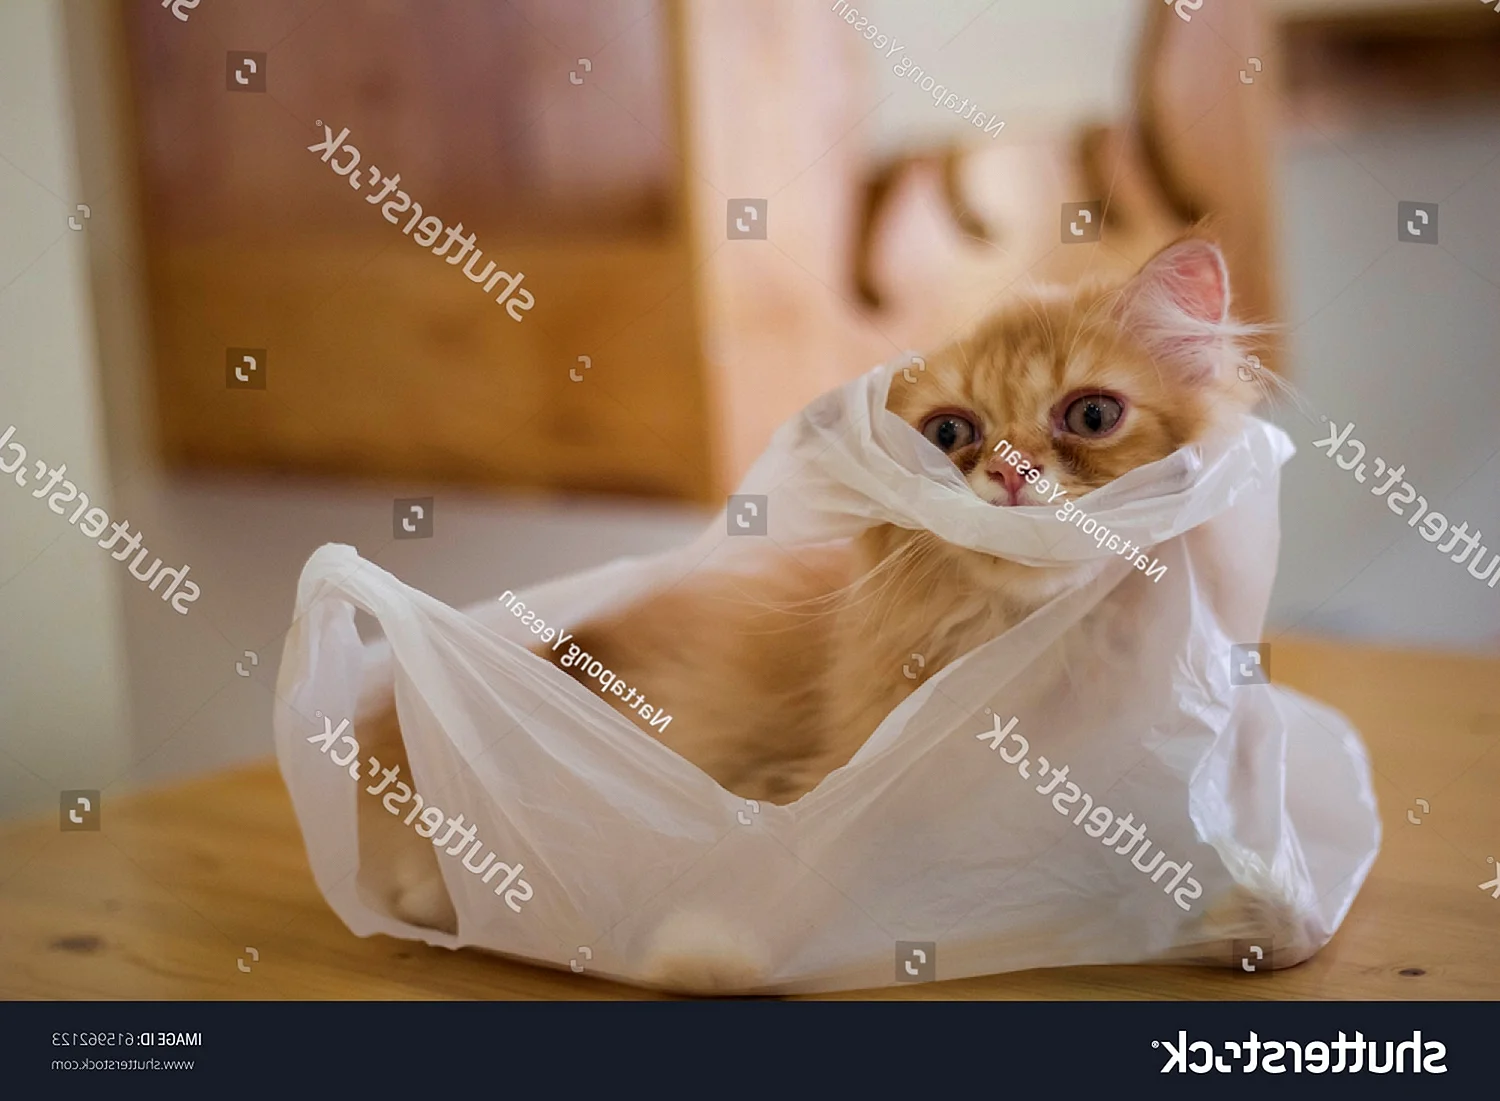 Кот жует пакет